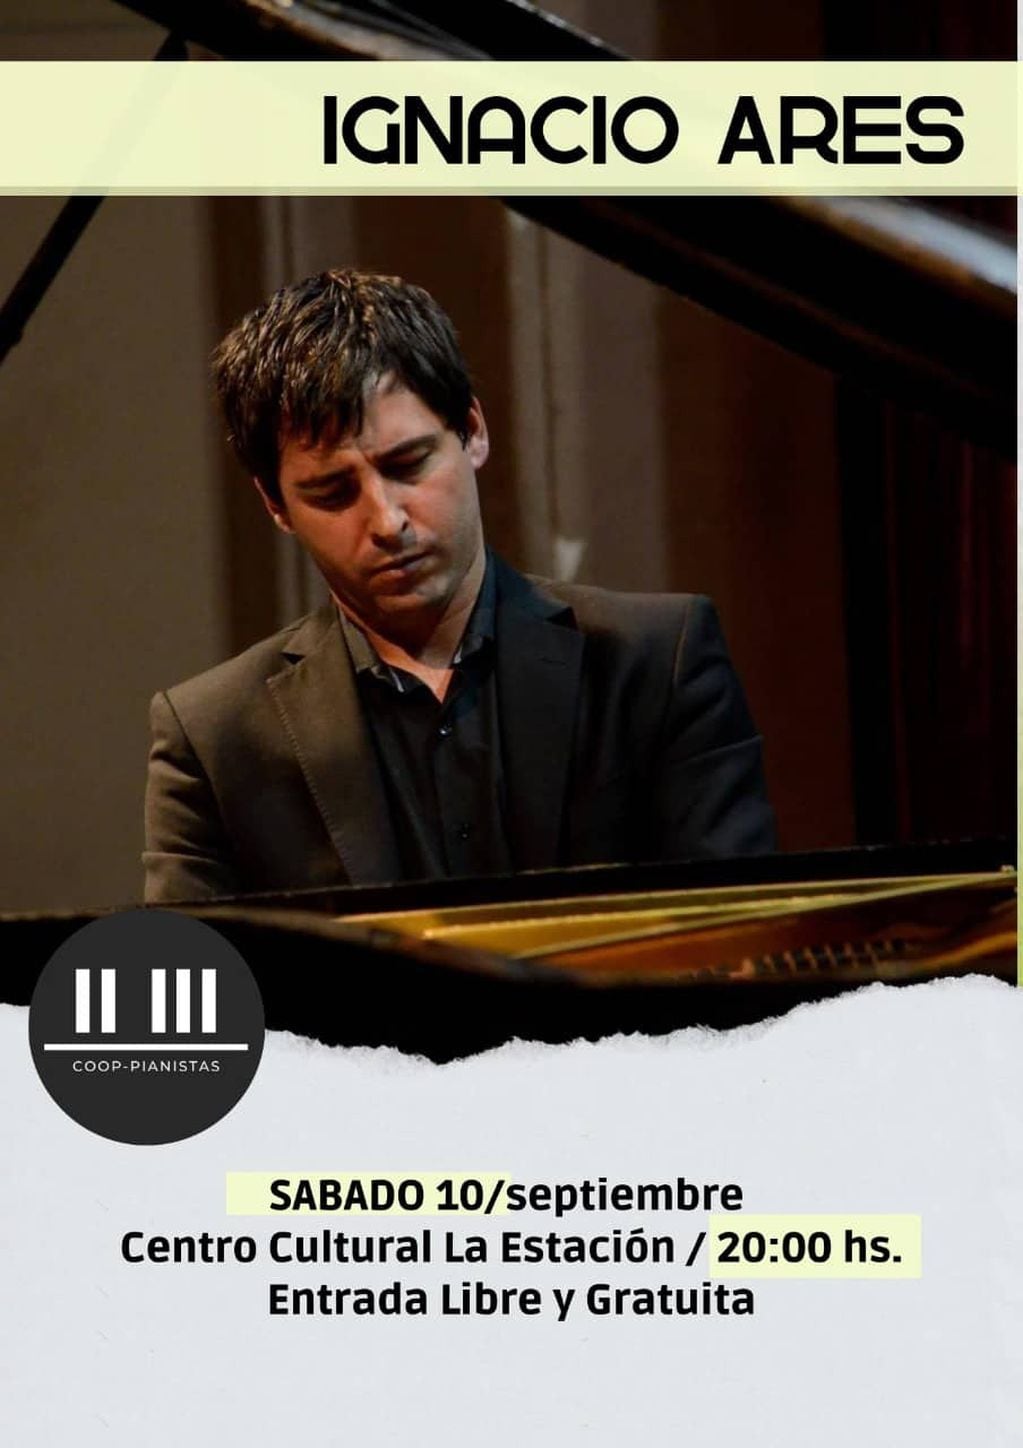 Concierto de piano del maestro Ignacio Ares en Tres Arroyos